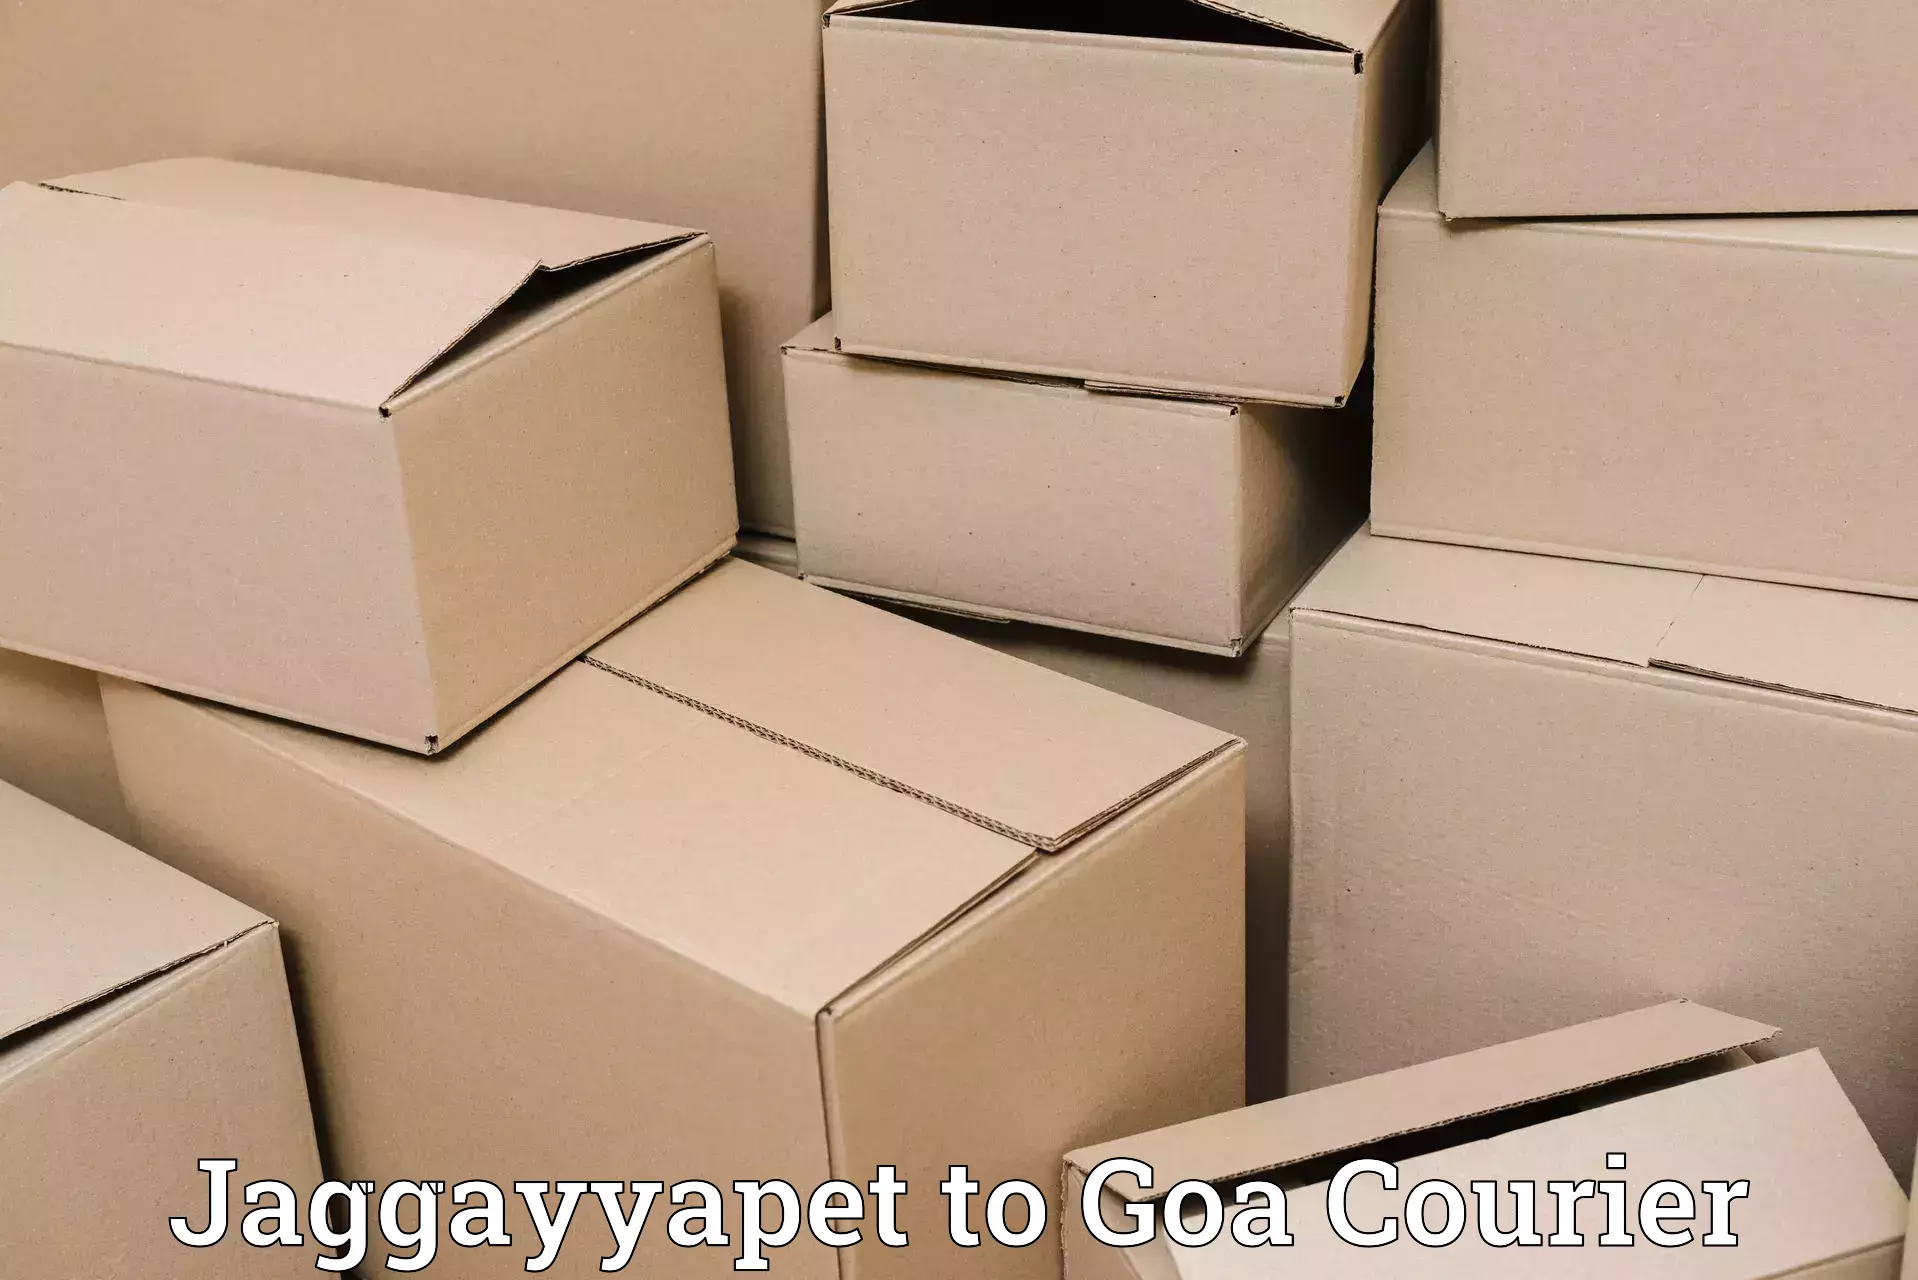 On-demand shipping options Jaggayyapet to Mormugao Port